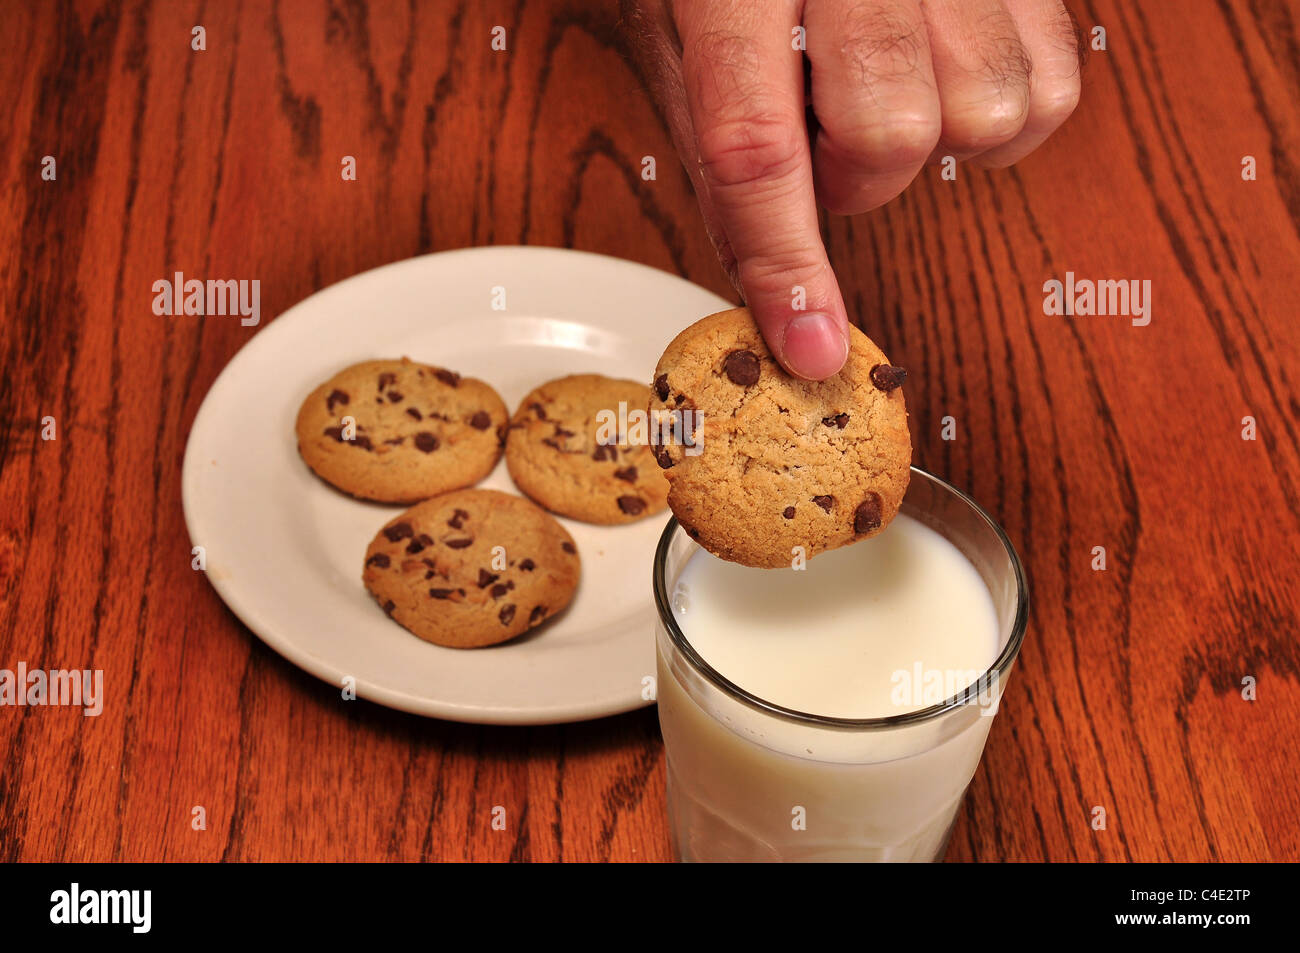 Ein Cookie soll in ein Glas Milch getaucht werden. Stockfoto